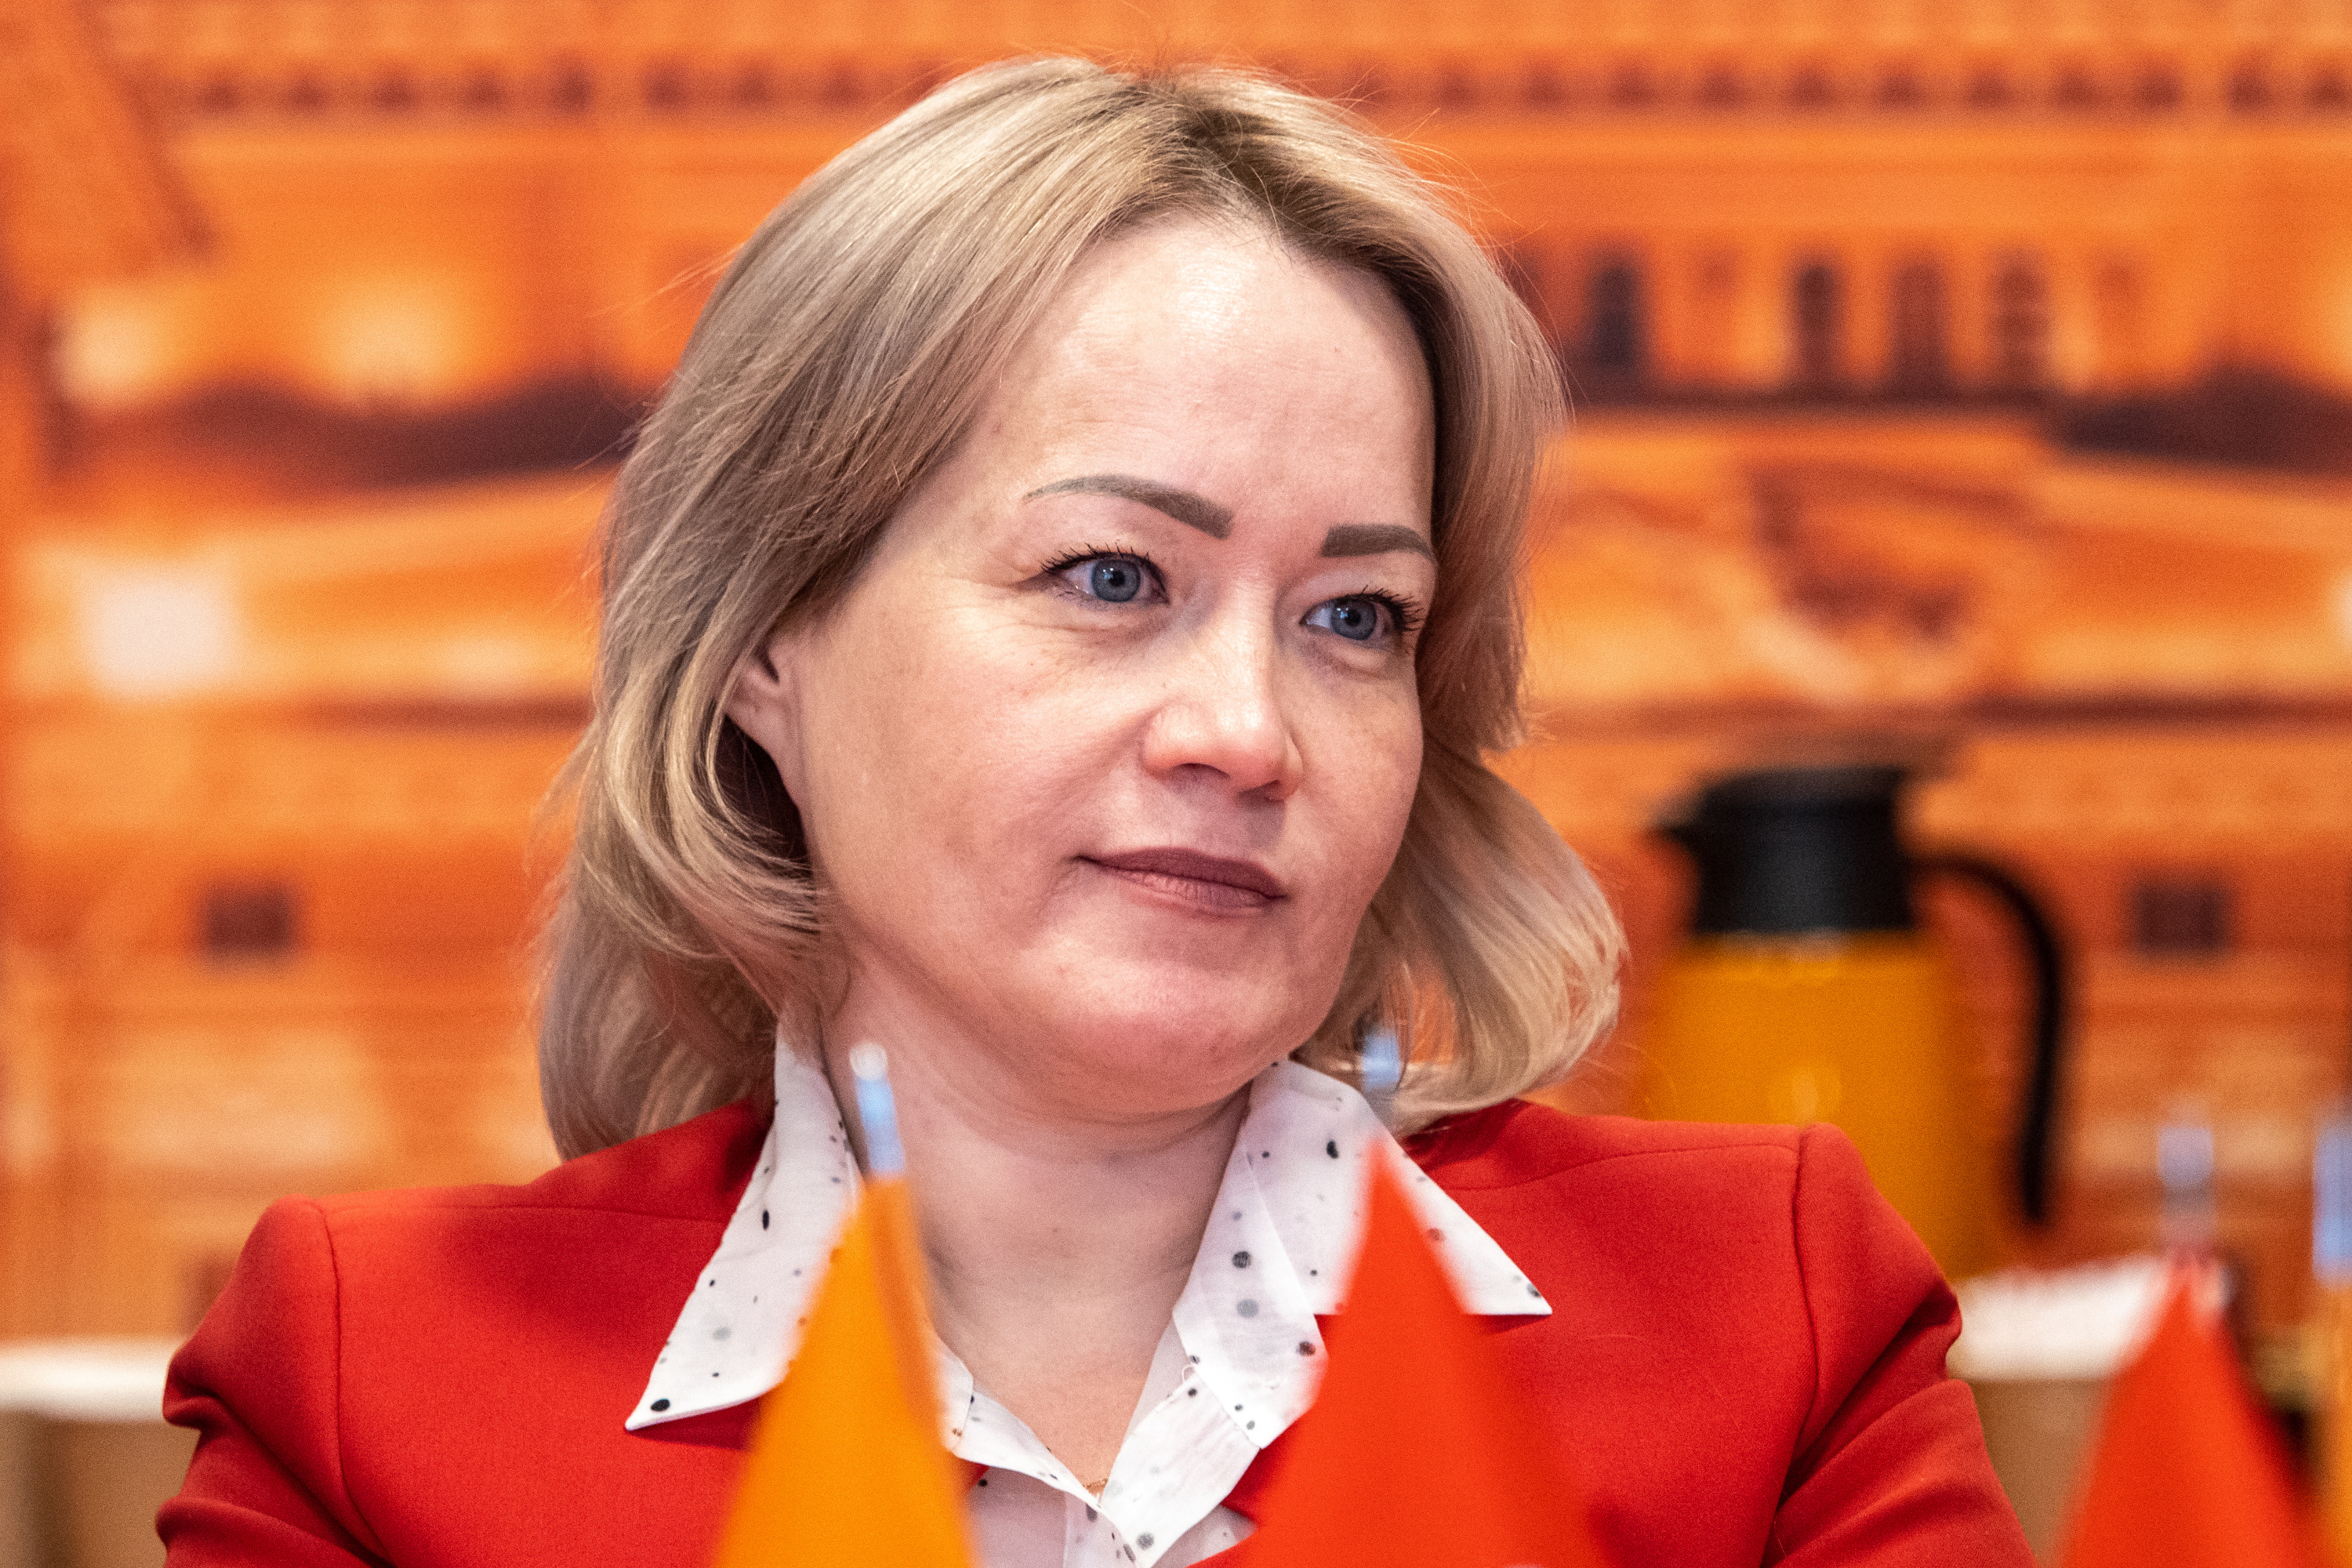 Римма Галлямова, заместитель генерального директора по управлению персоналом и административным вопросам АО «Балтийский завод»